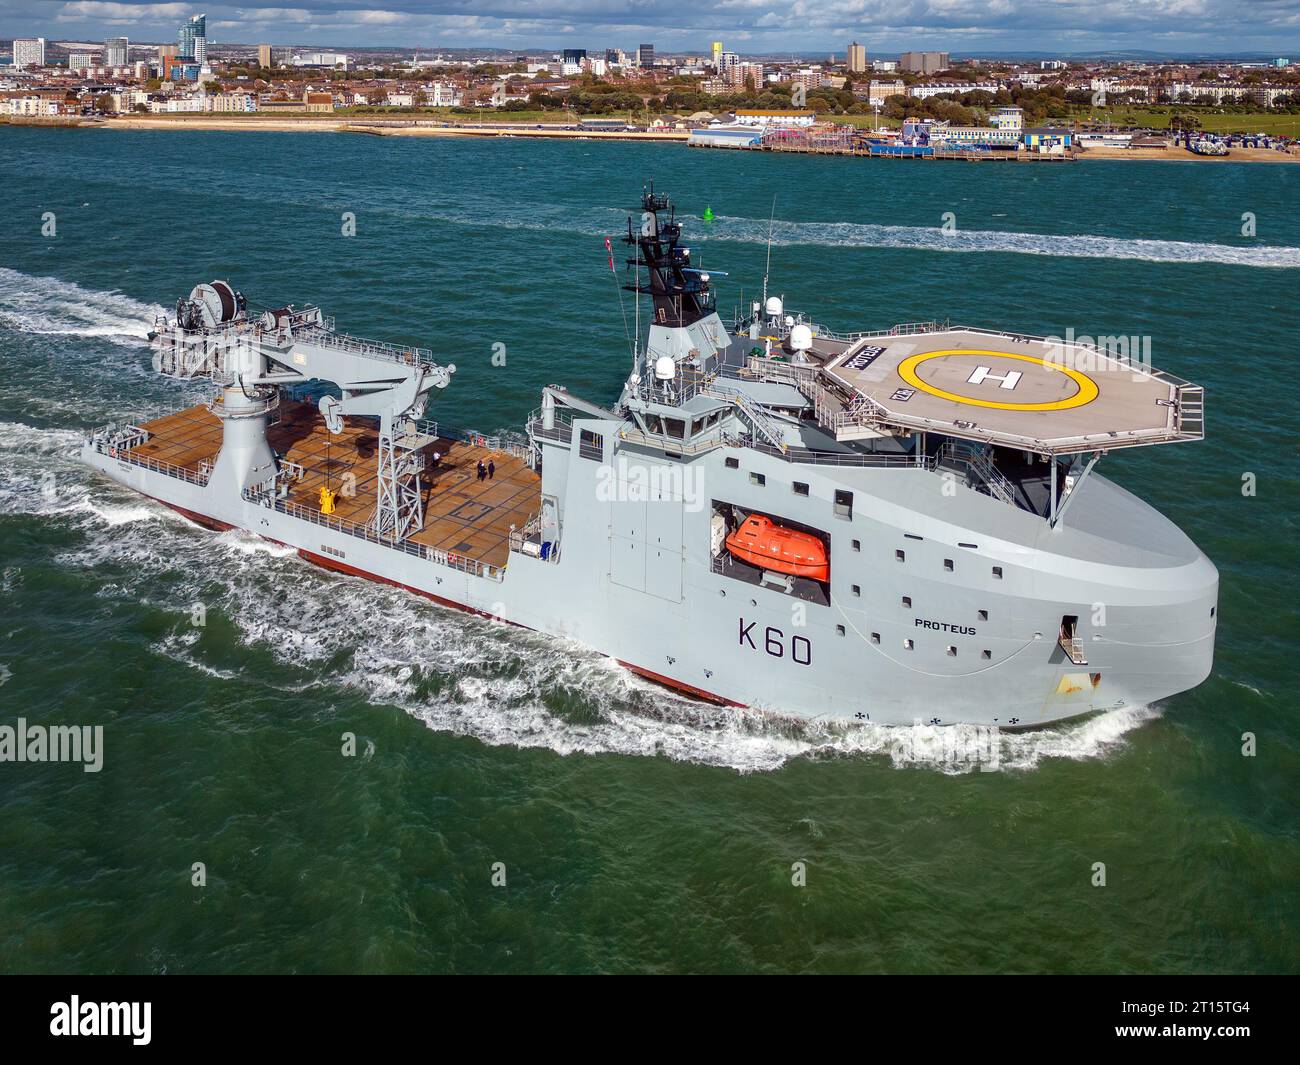 Le RFA Proteus (K60) est un navire de surveillance océanique multi-rôle chargé de protéger l'infrastructure de câbles et de pipelines sous-marins du Royaume-Uni. Banque D'Images